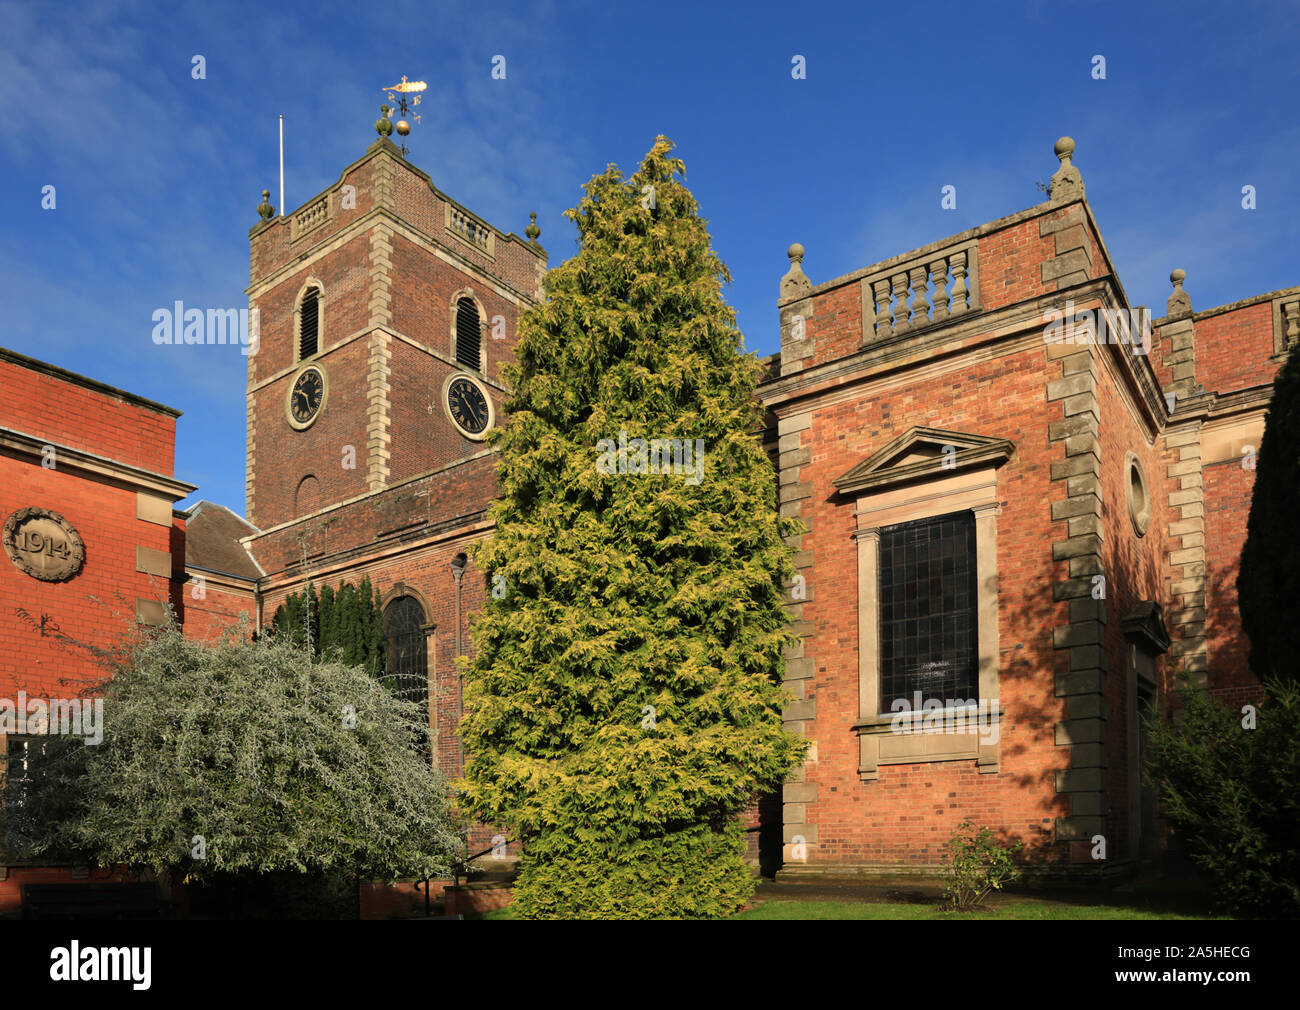 St Thomas' church, Market street, Stourbridge, West midlands, England, UK. Stock Photo